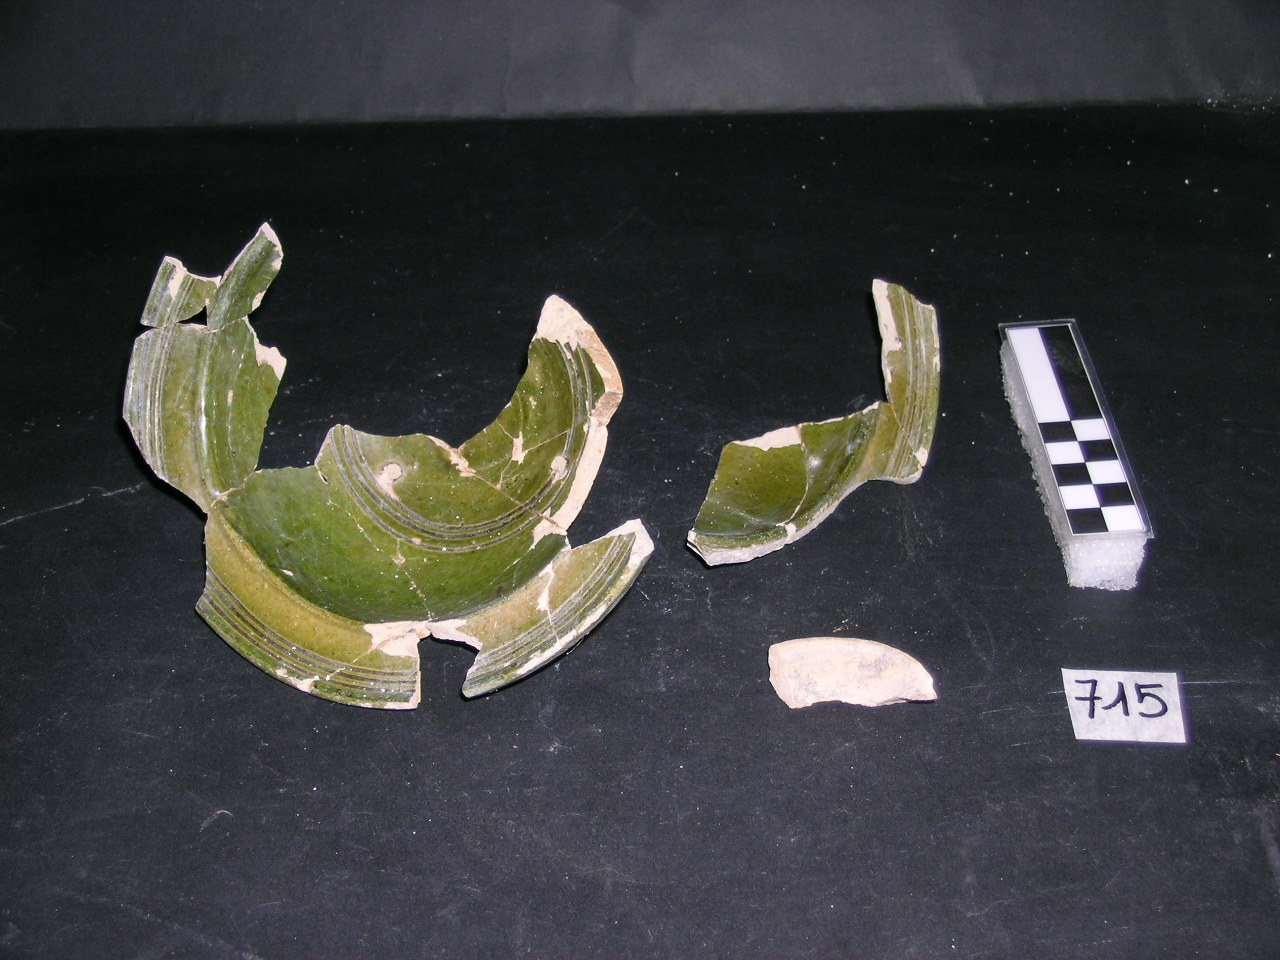 vaso - invetriata verde - produzione siciliana (meta' sec. XIII)